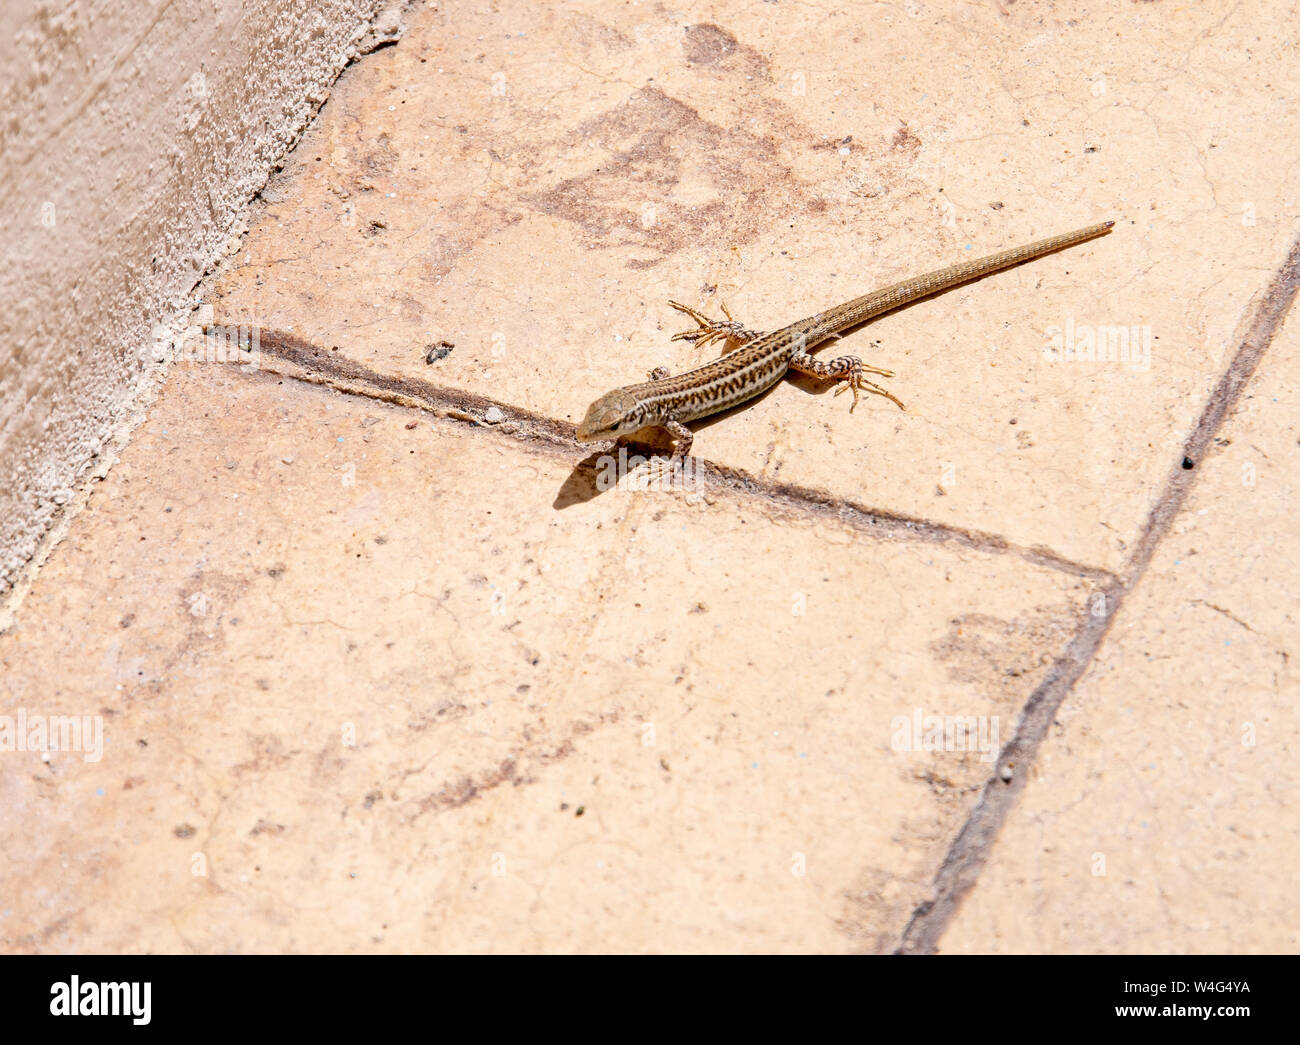 Eine Erhard's Wand lizard man über gepflasterte Bodenbeläge in einem griechischen Villa Garden Stockfoto